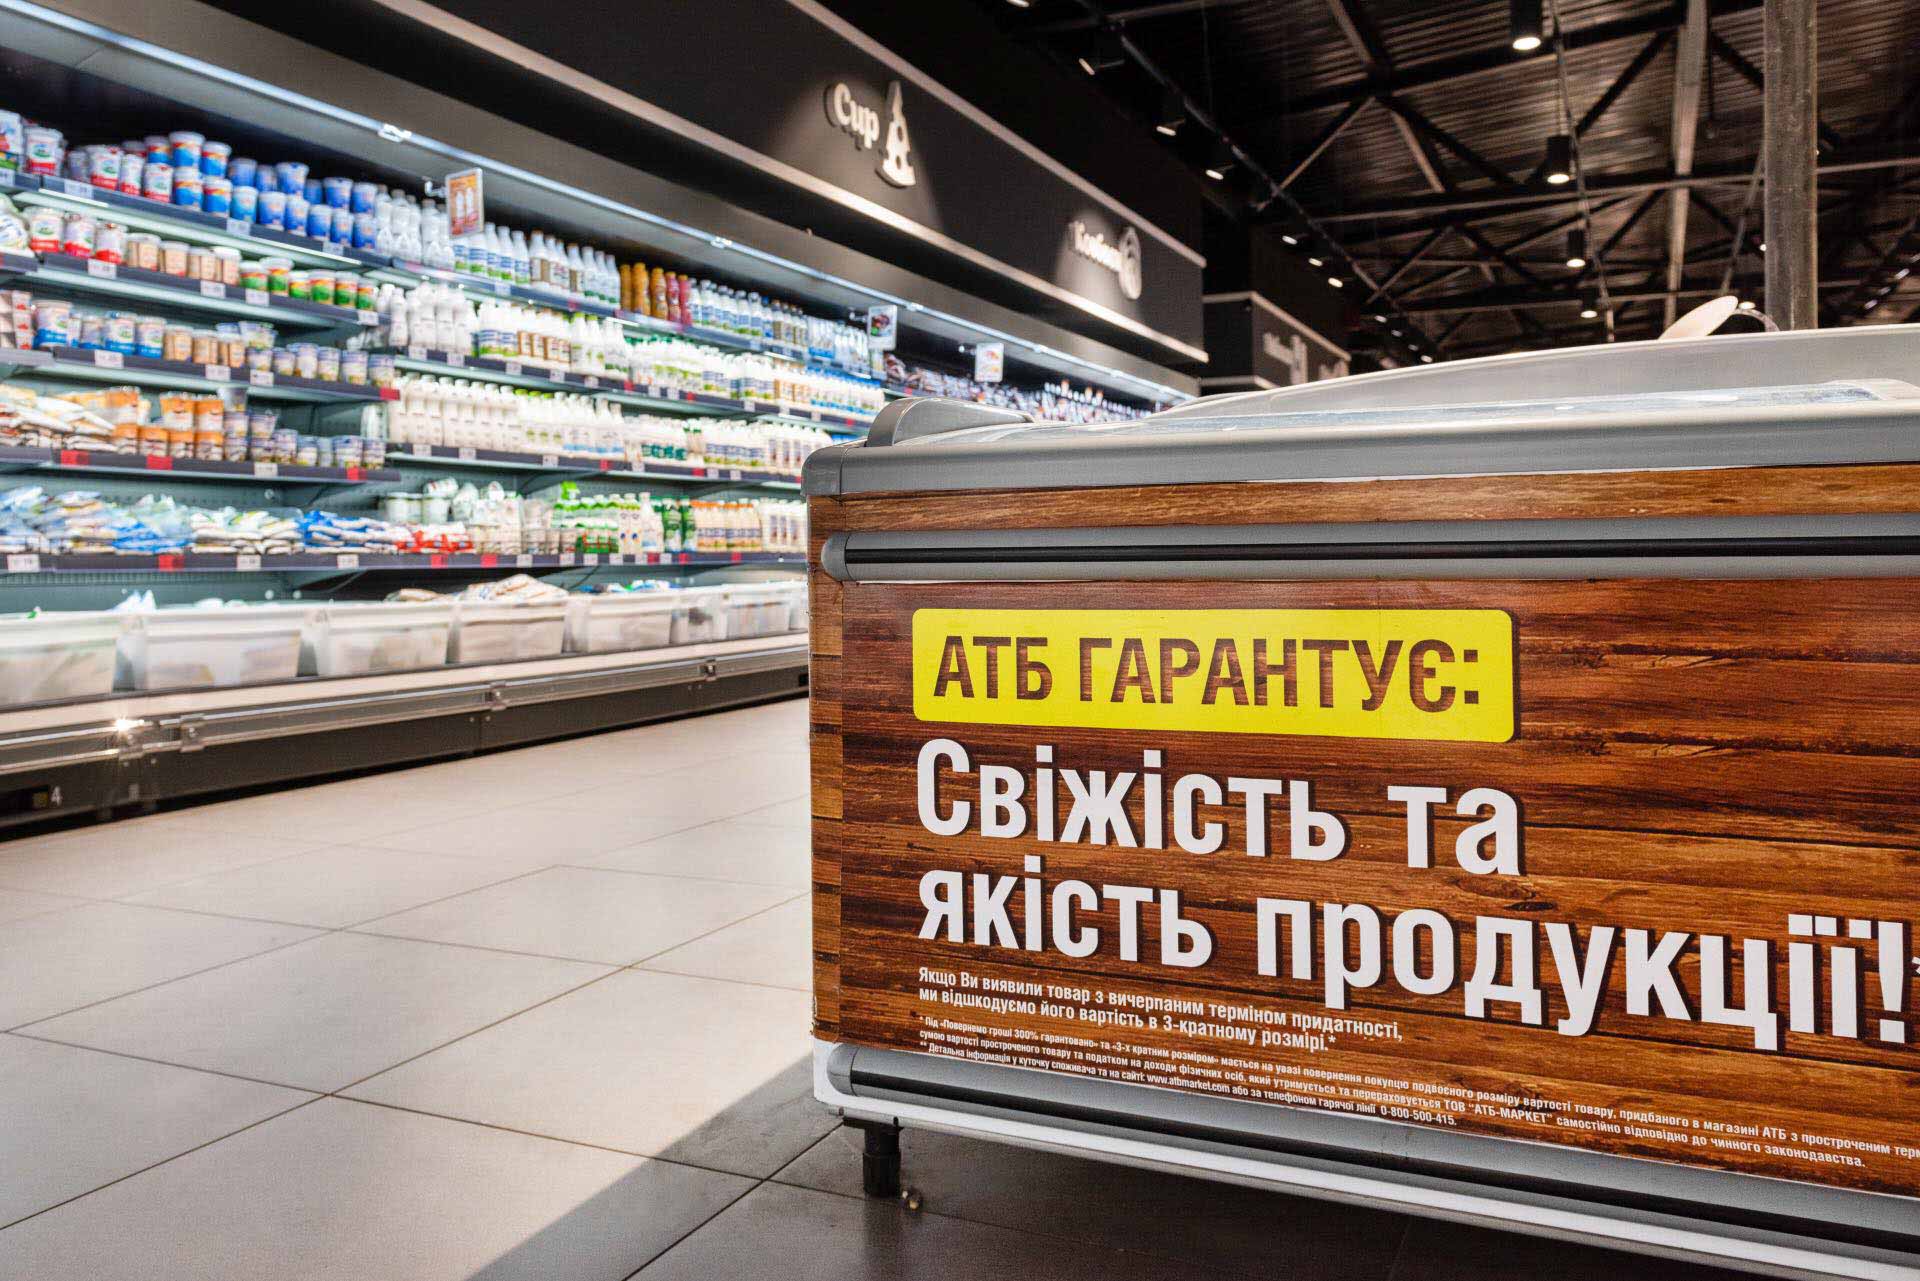 Як на поличках супермаркетів «АТБ» Івано-Франківська з’являються гарантовано свіжі продукти